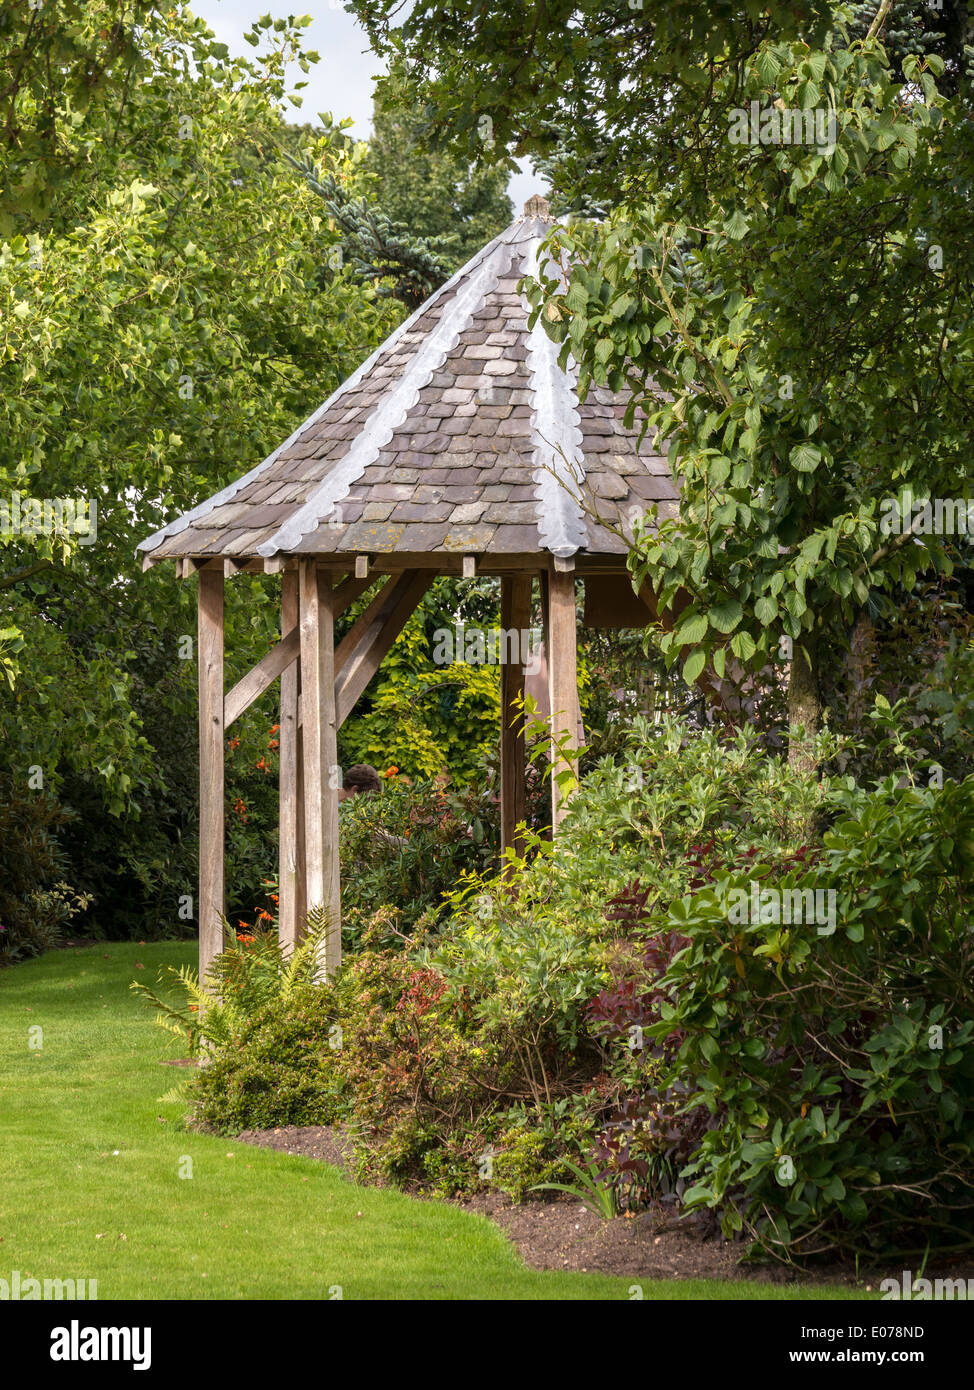 Achteckige Pavillon mit Schiefer Steildach und Pfosten und Balken Eichenrahmen im Garten mit Rasen, Bäumen und Sträuchern Stockfoto